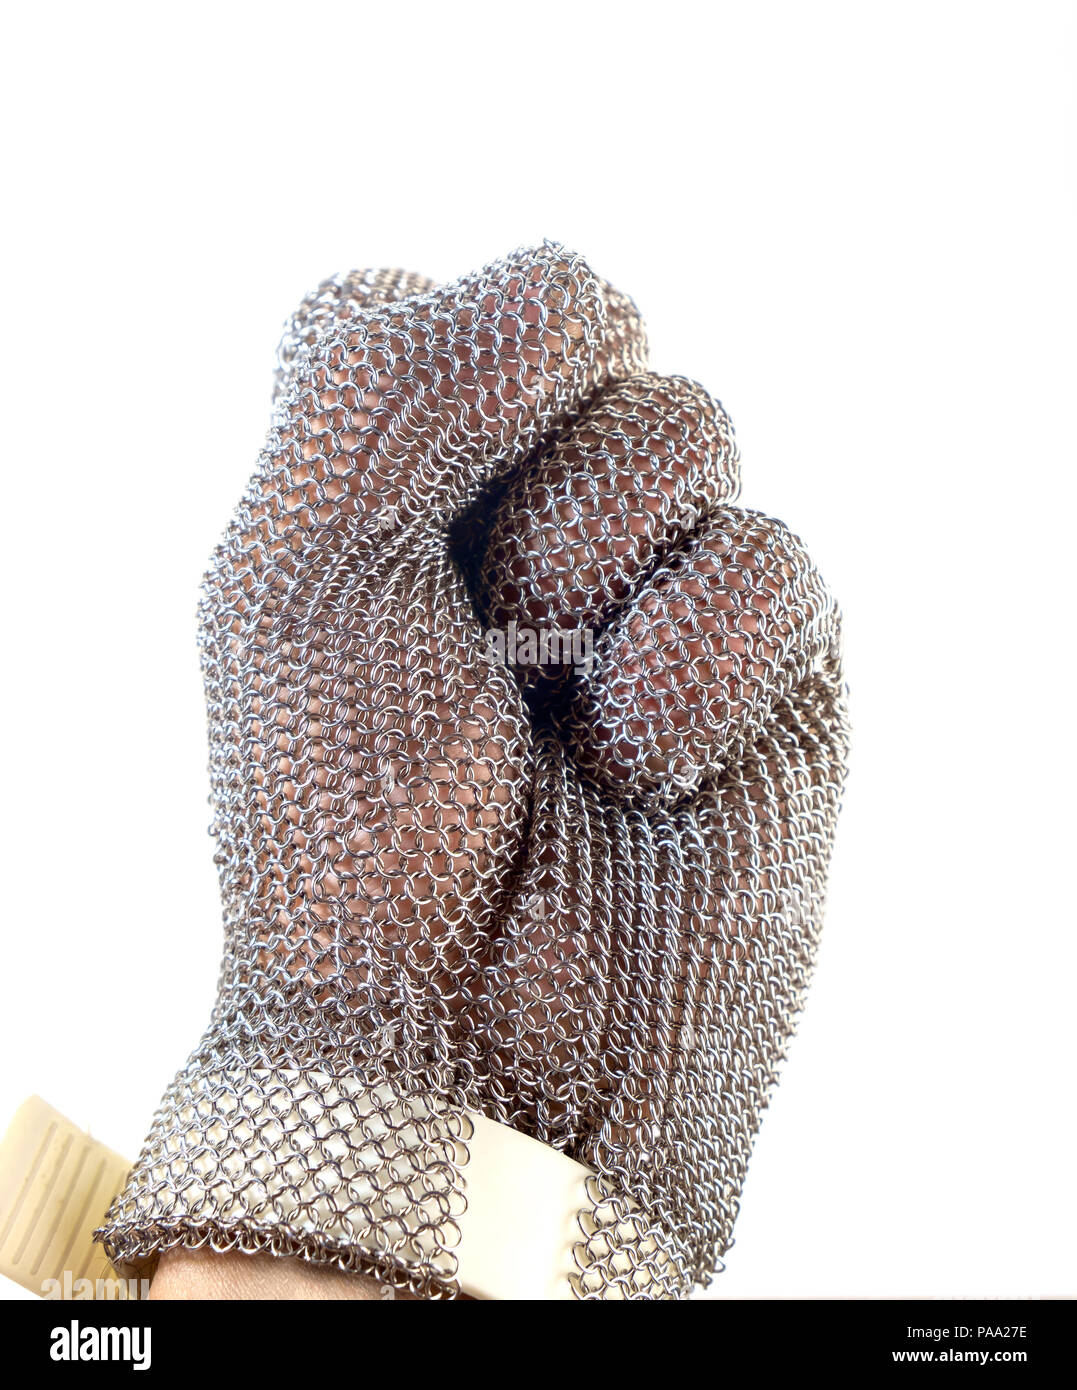 La main avec le fer mesh glove sur fond blanc. Des dispositifs de protection pour les applications industrielles. Banque D'Images